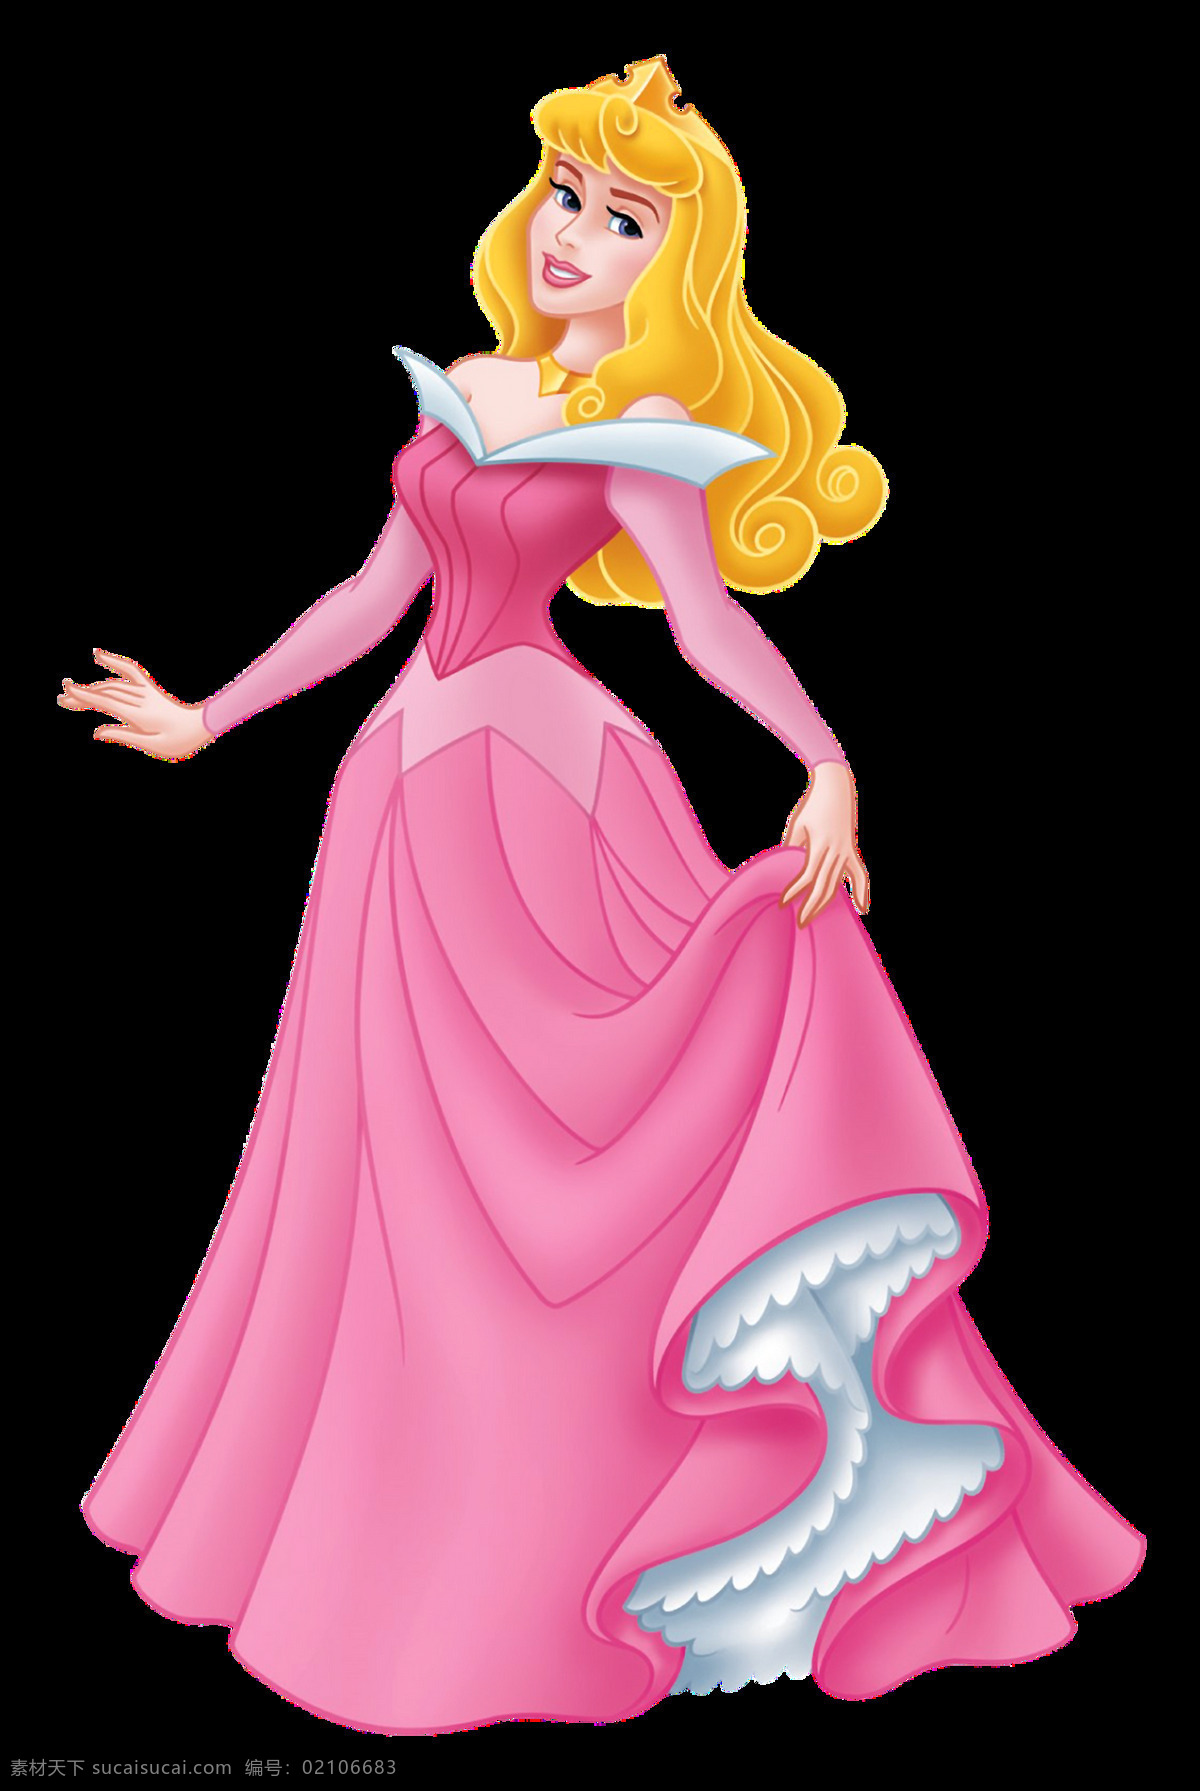 艾洛公主 aurora princesse 迪士尼公主 公主 艾洛 动漫动画 动漫人物